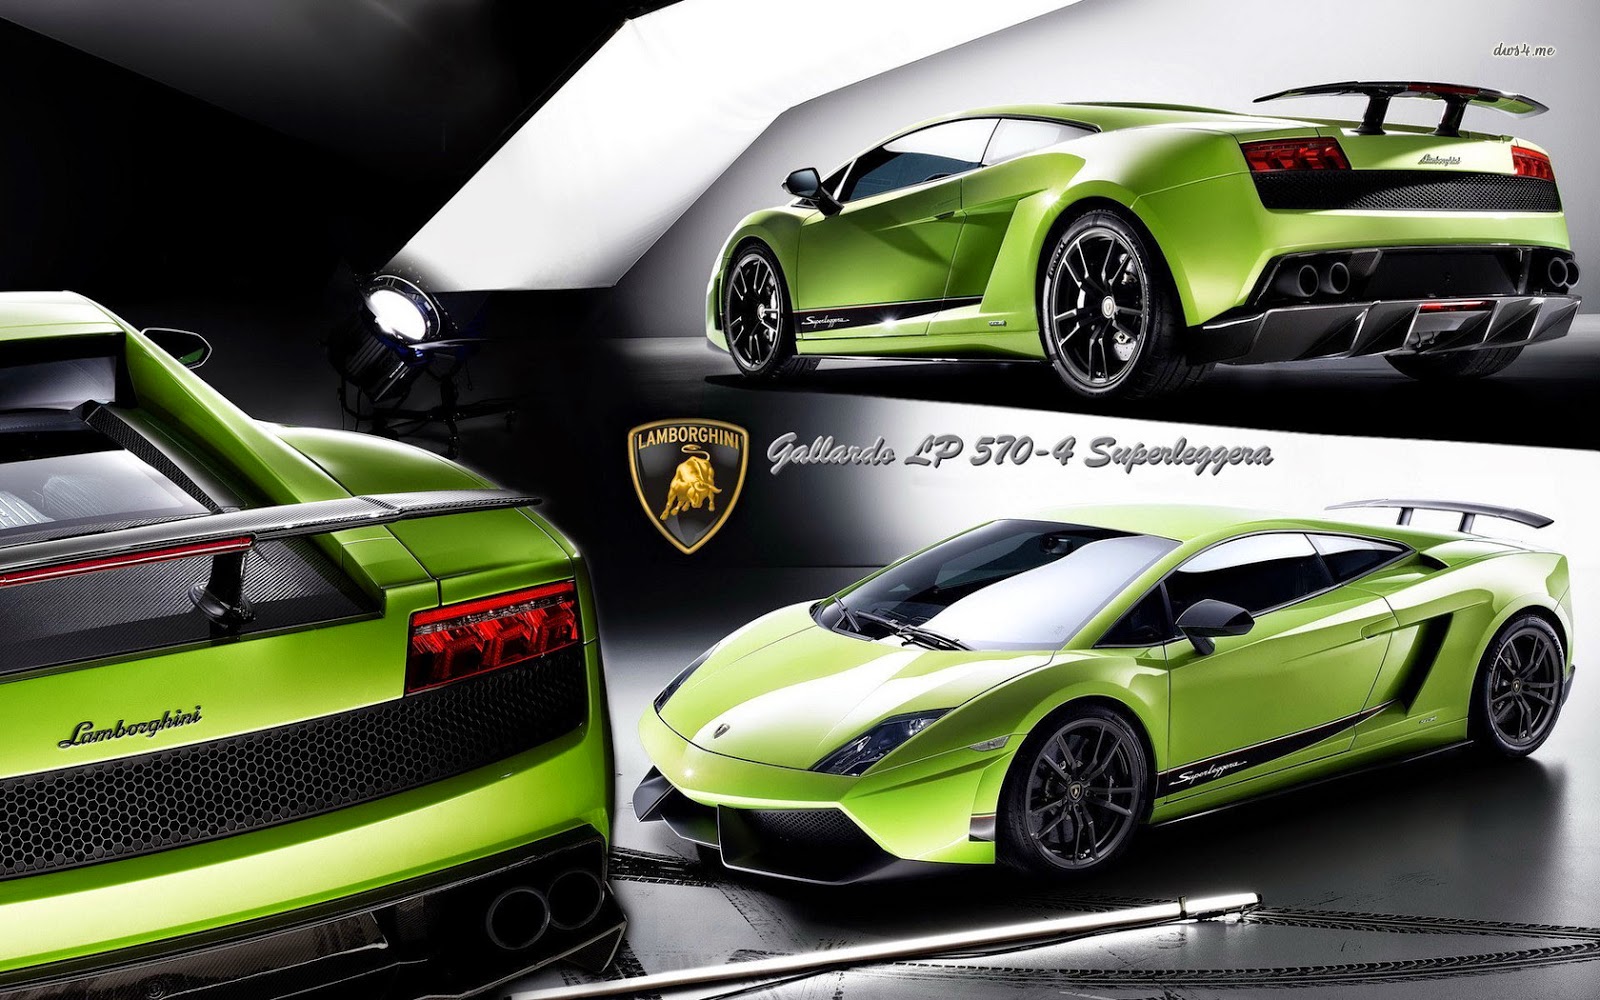 Mobil Keren Otomotif Otomotif Mobil Otomotif Motor - Lamborghini Gallardo Lp 570 4 Superleggera , HD Wallpaper & Backgrounds